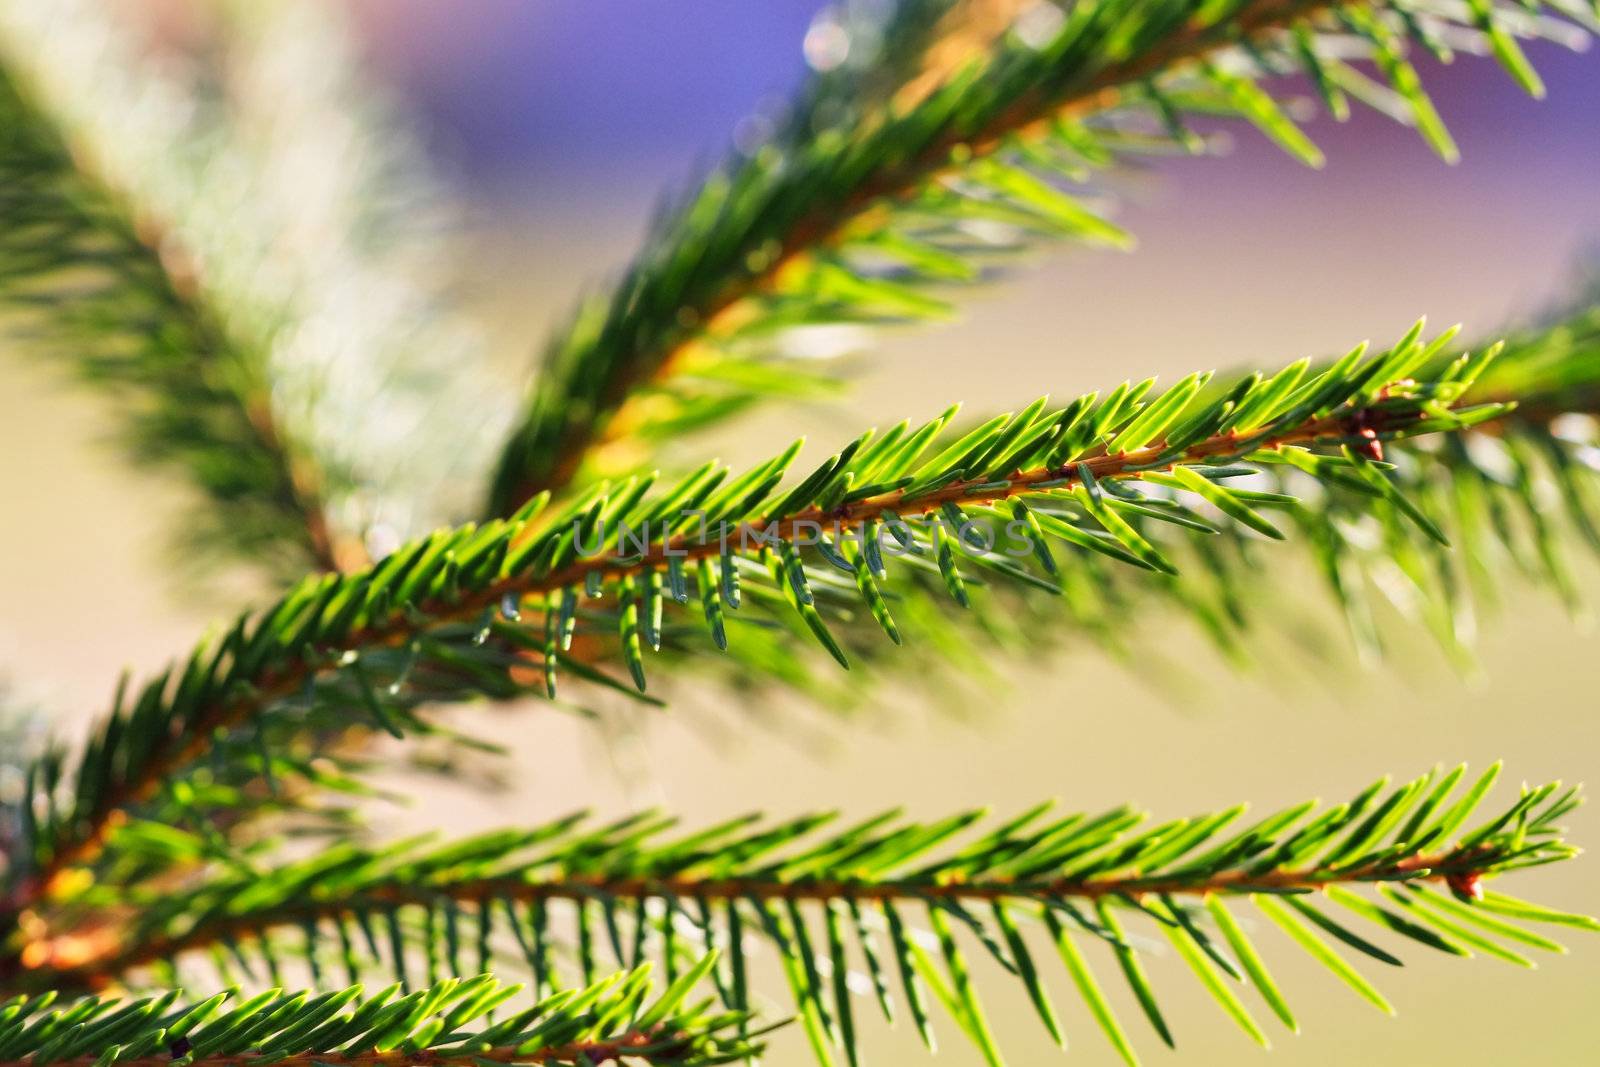 Green pine branch